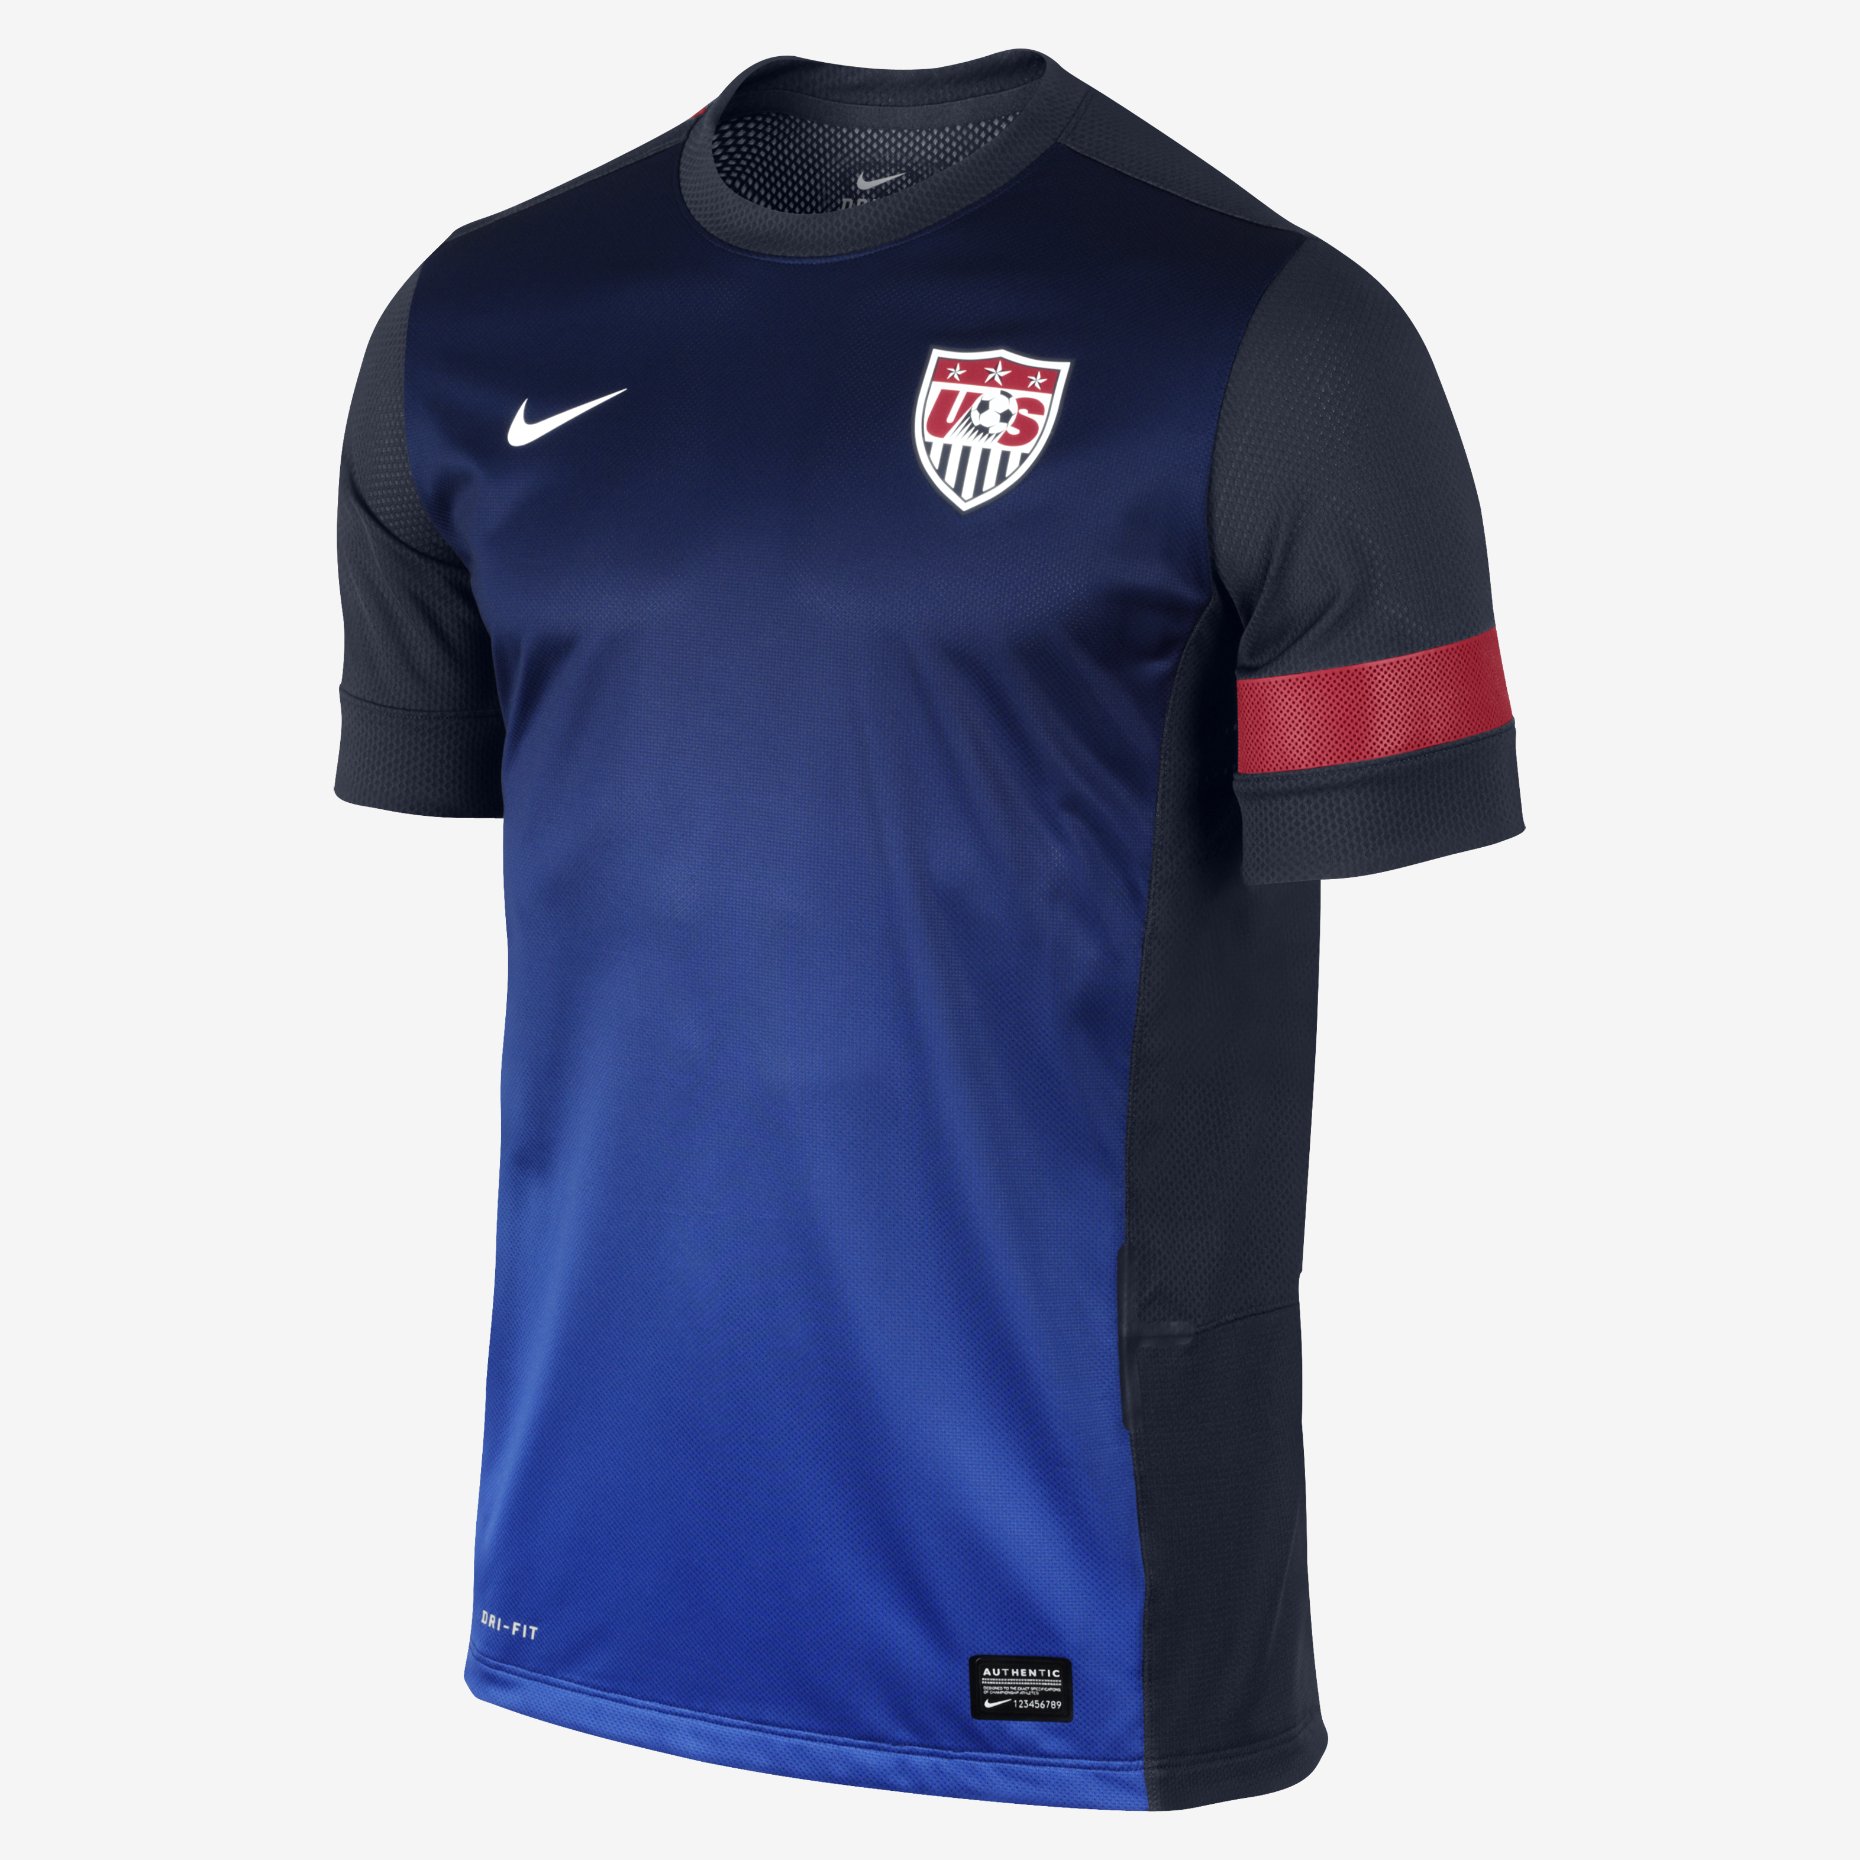 US-Training-3-Mens-Soccer-Jersey-534925_451 | Training tops, Soccer ...